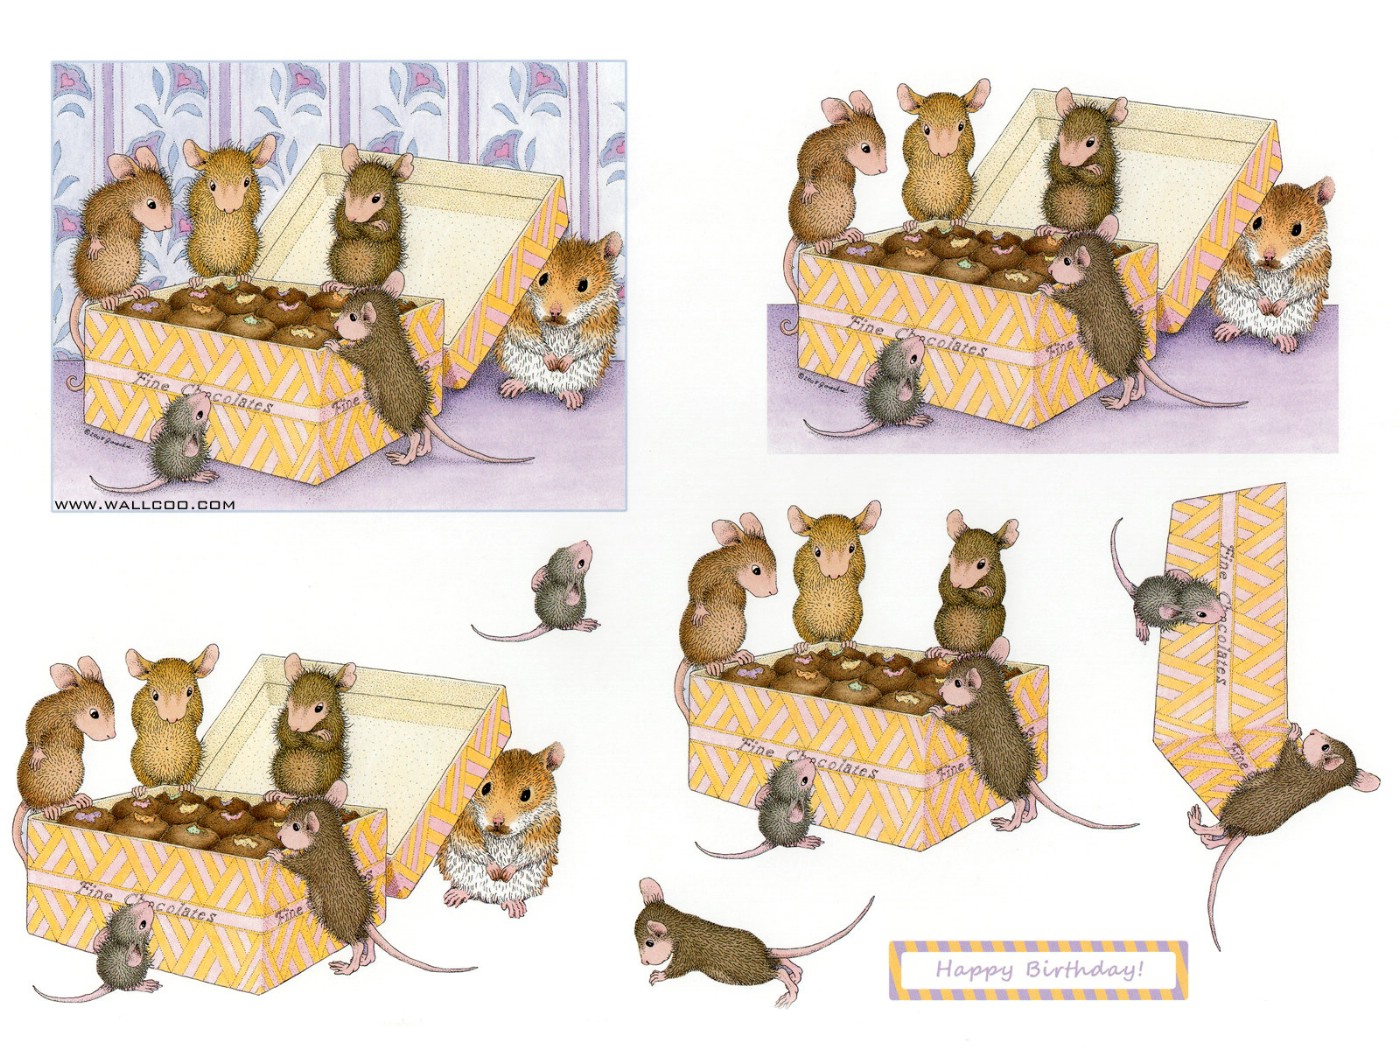 壁纸1400x1050 巧克力 可爱小老鼠插画原画壁纸 鼠鼠一家-温馨小老鼠插画壁纸壁纸 鼠鼠一家-温馨小老鼠插画壁纸图片 鼠鼠一家-温馨小老鼠插画壁纸素材 绘画壁纸 绘画图库 绘画图片素材桌面壁纸